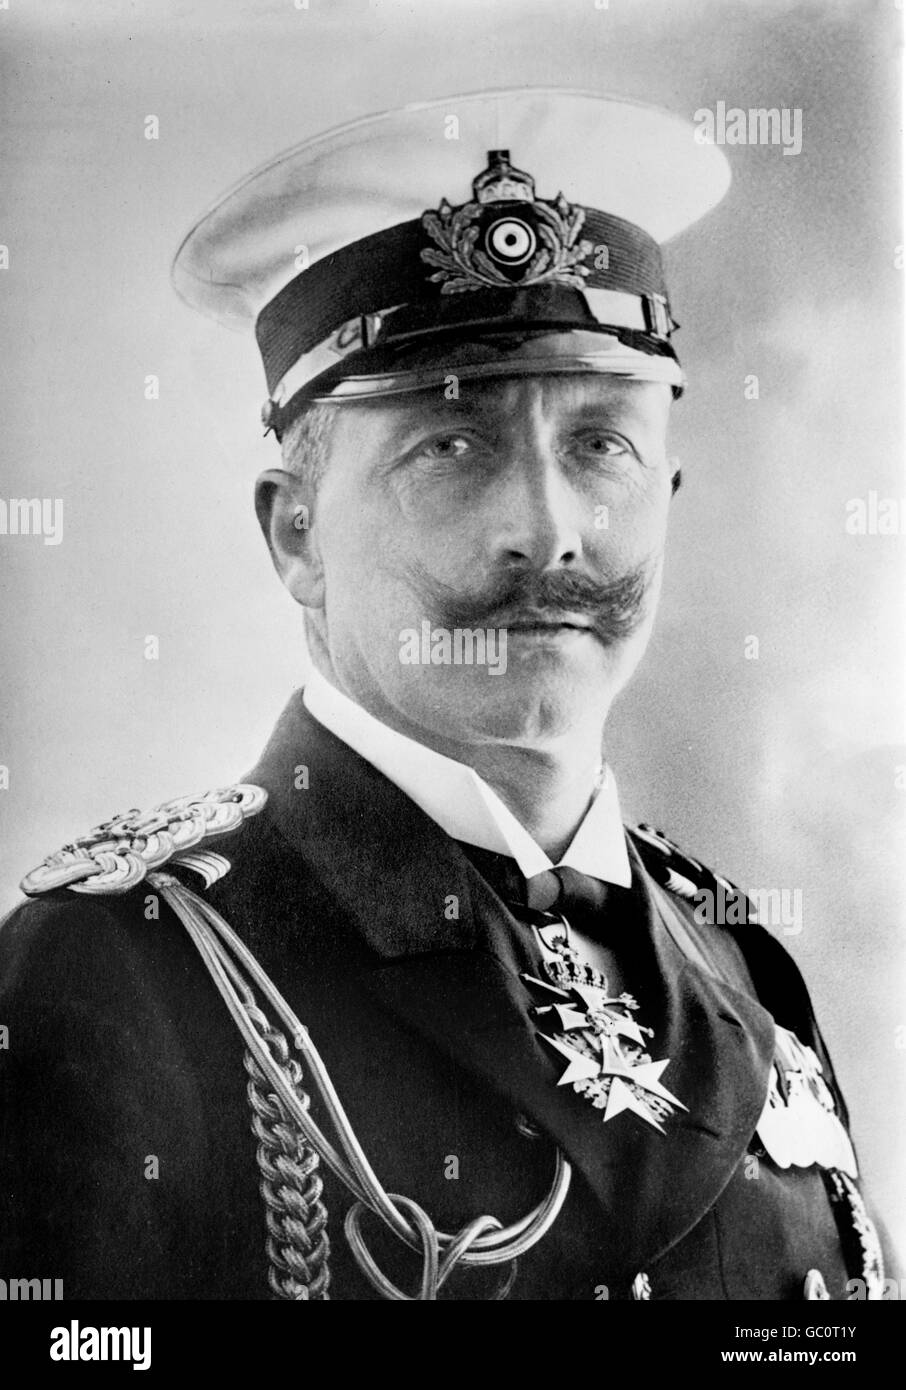 L'empereur Guillaume II (1859-1941). Portrait de l'empereur d'Allemagne et roi de Prusse, vêtu de l'uniforme de la marine. Photo de Bain News Service, c.1910-1915. Banque D'Images